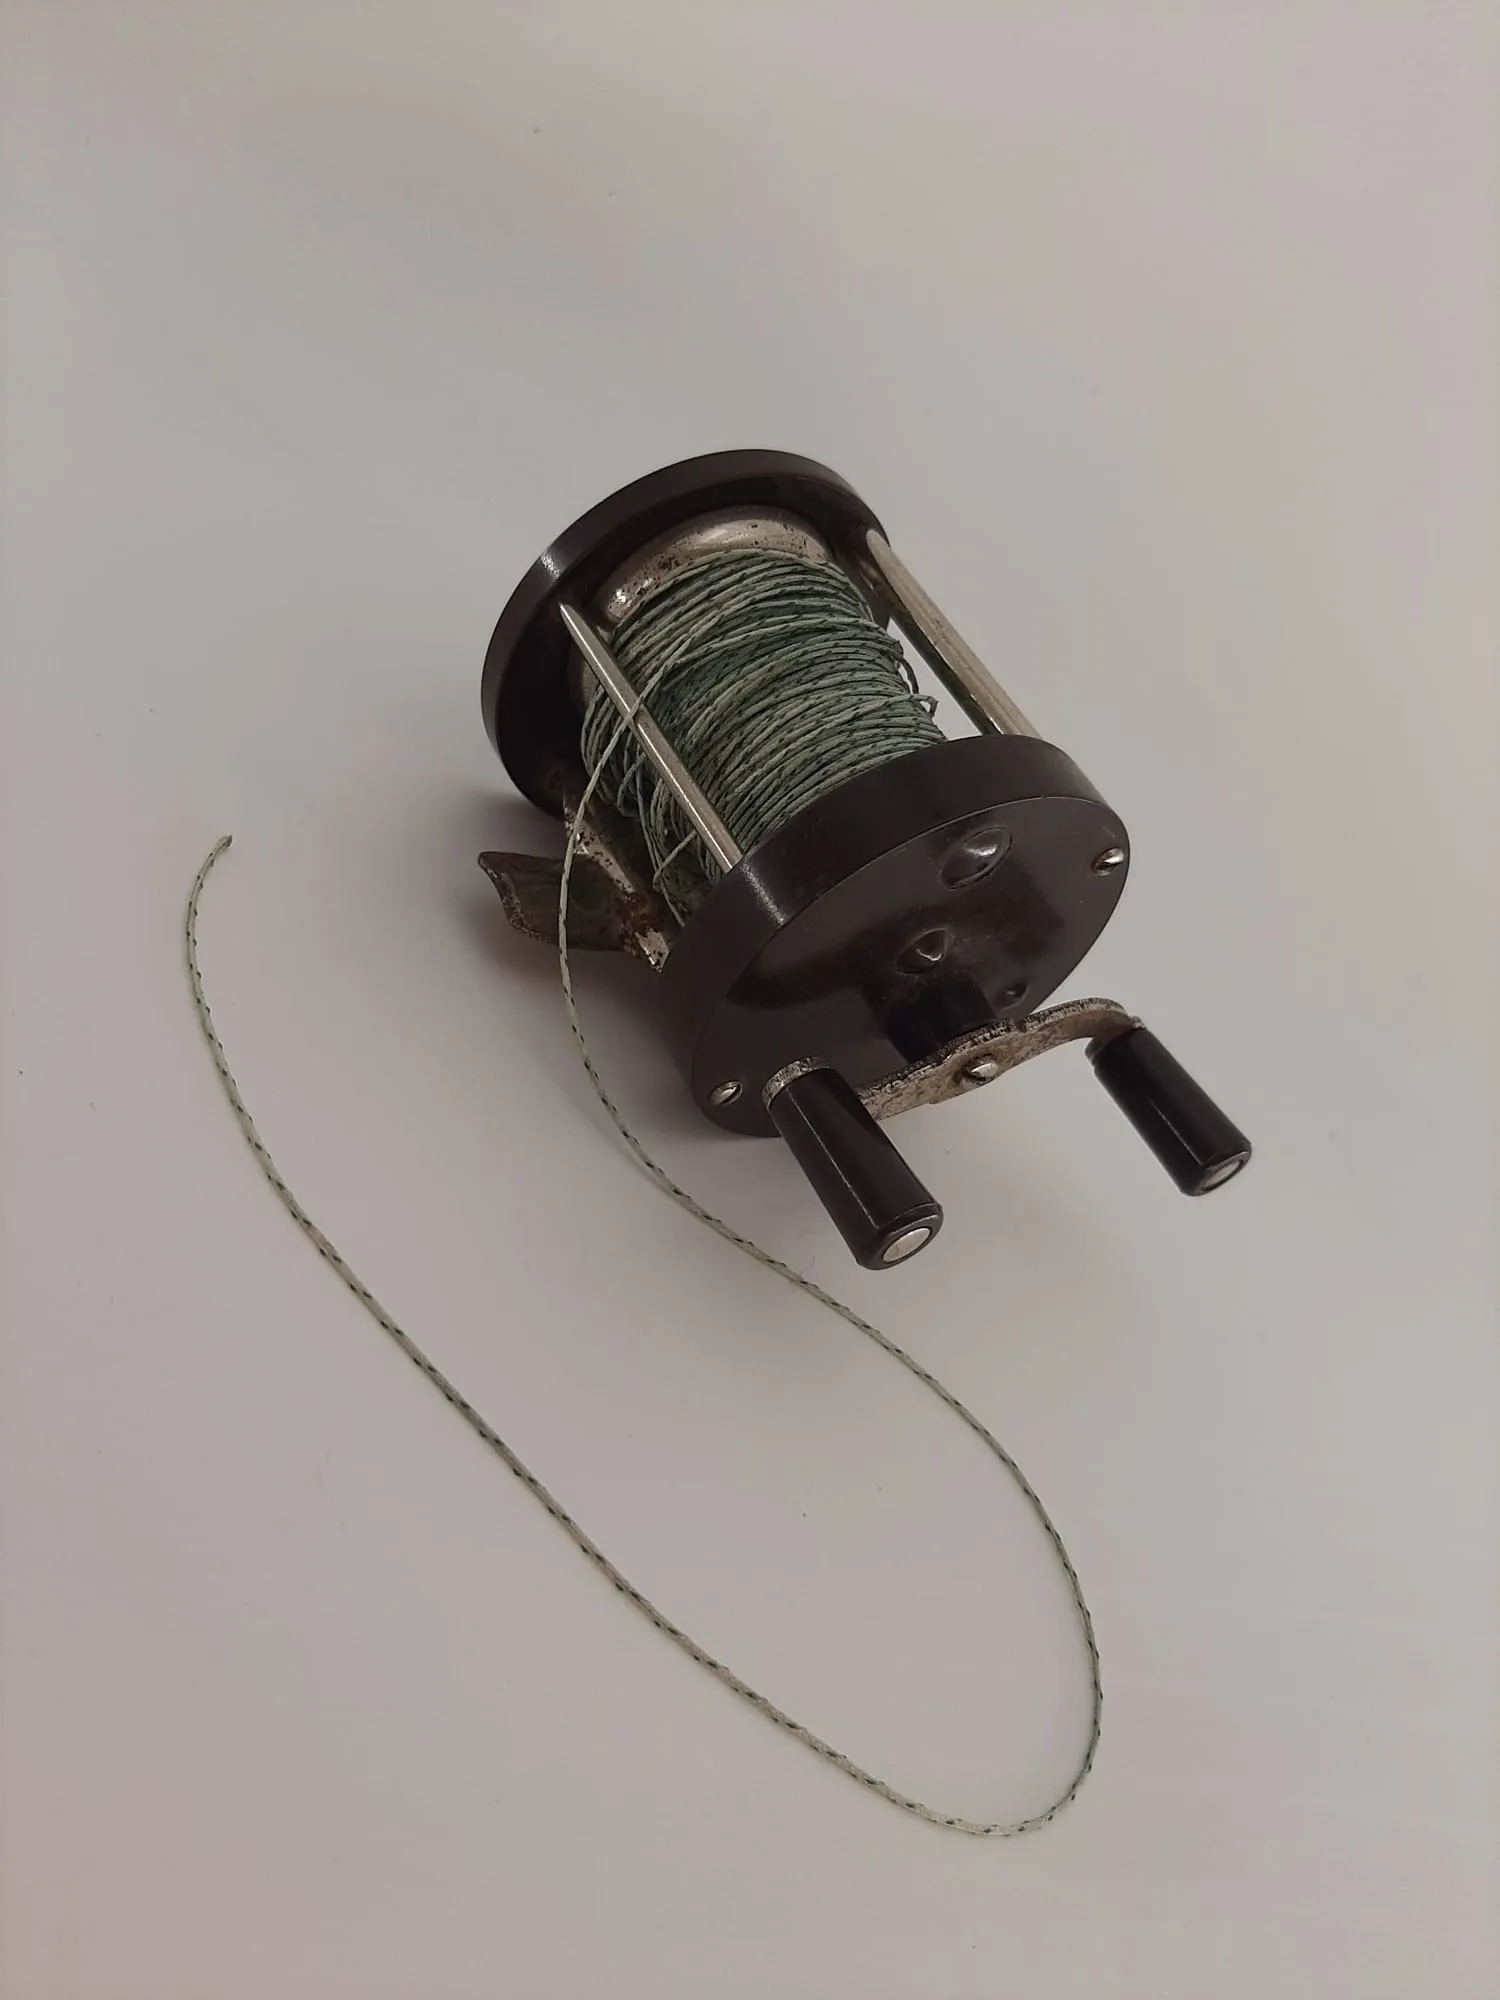 Vintage Backelite Fishing Reel